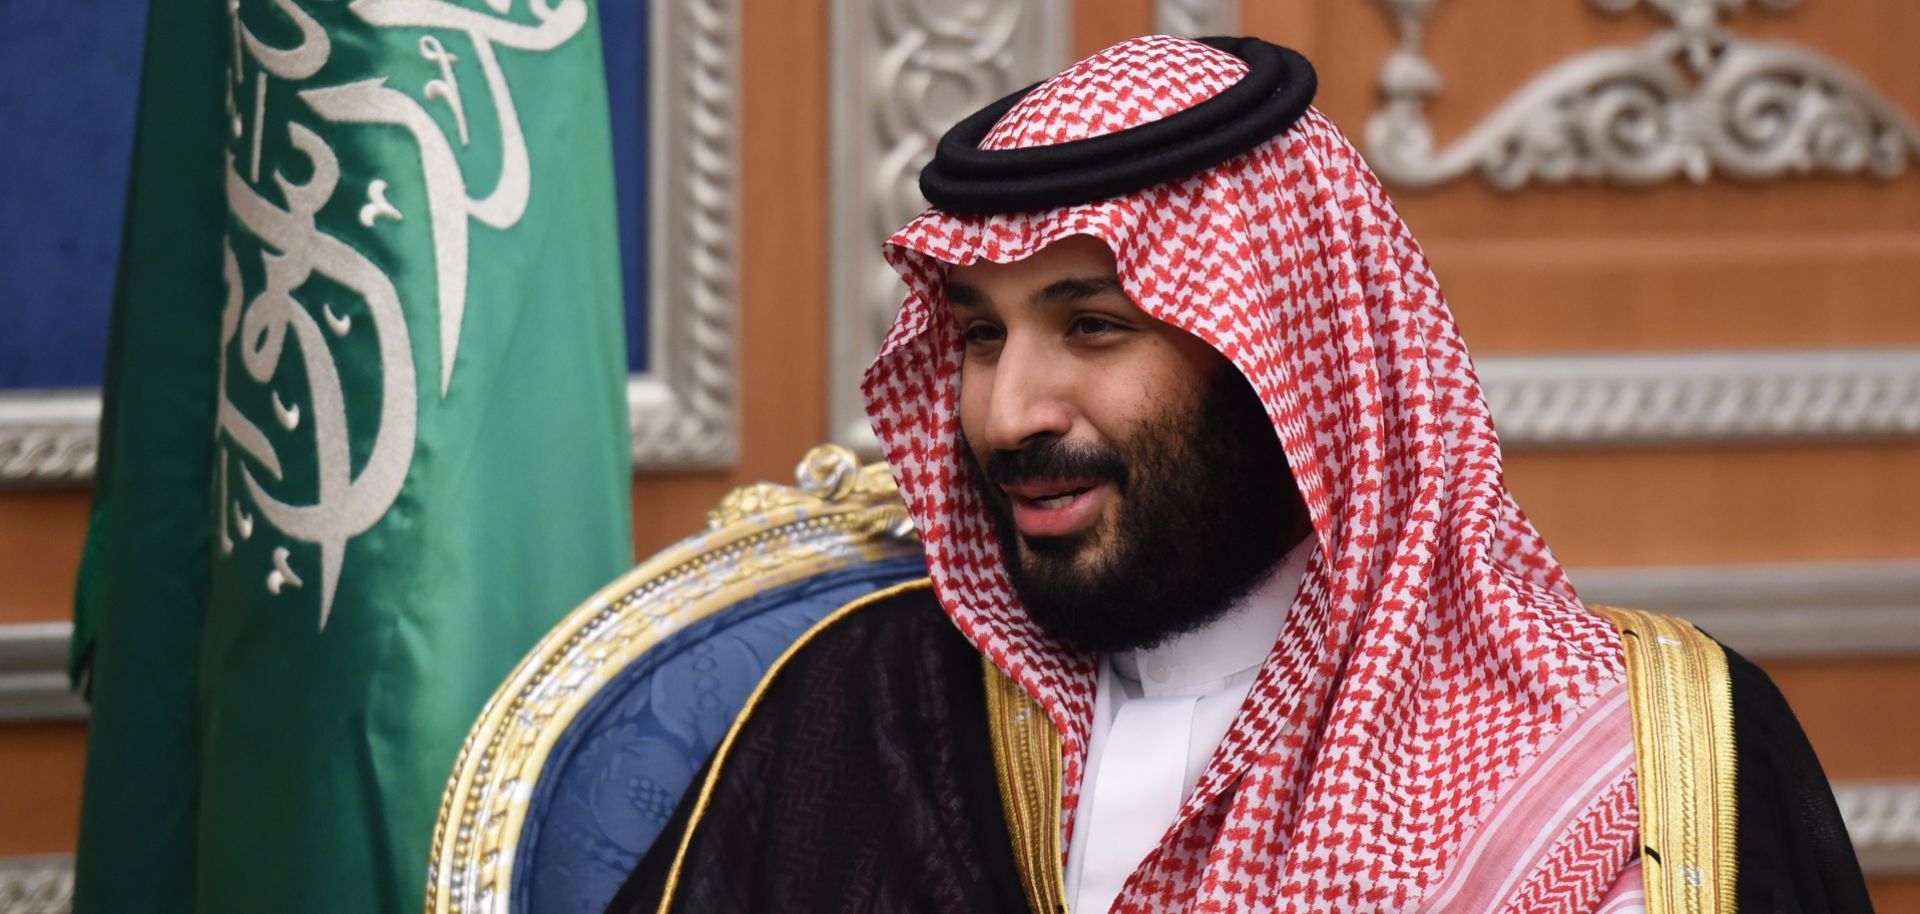 Saudi Crown Prince Mohammed bin Salman, in Riyadh, Saudi Arabia, during November 2017.